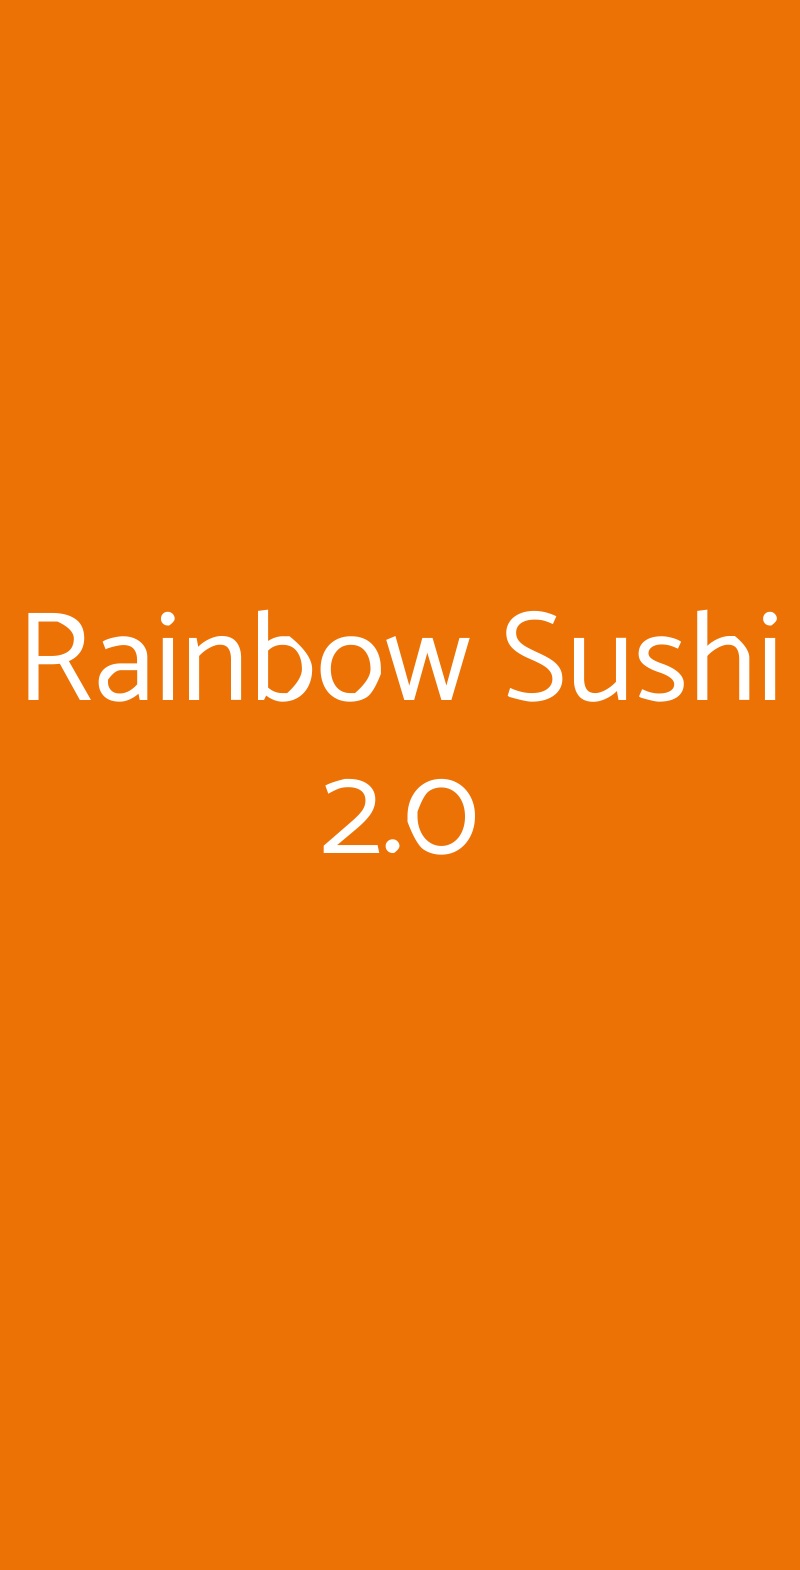 Rainbow Sushi 2.0 Rimini menù 1 pagina